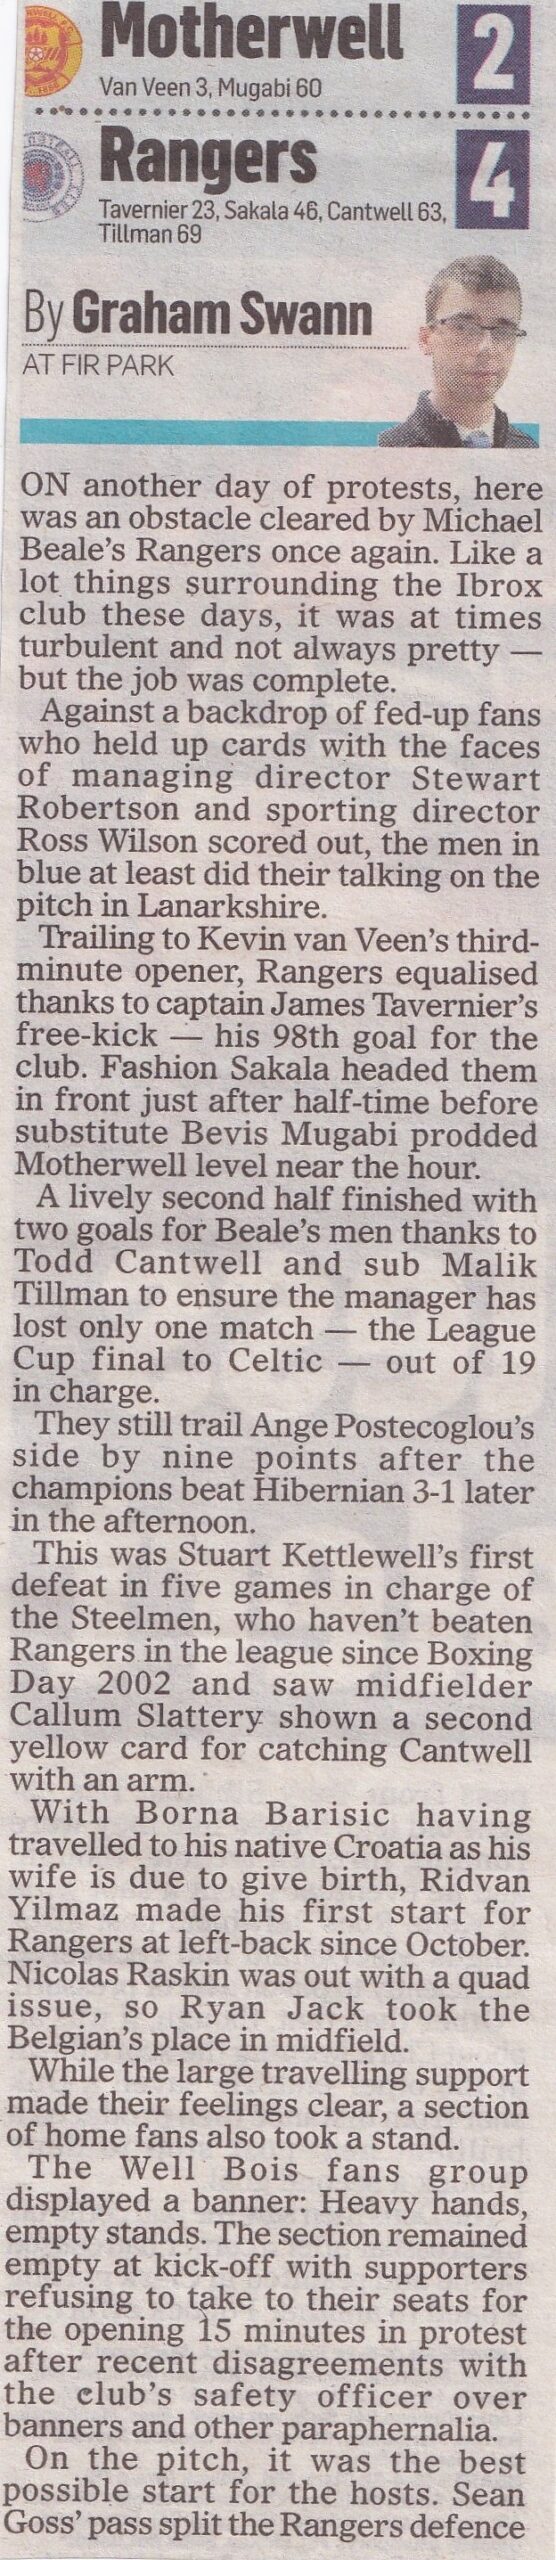 Motherwell versus Rangers Match Report from Tabloids